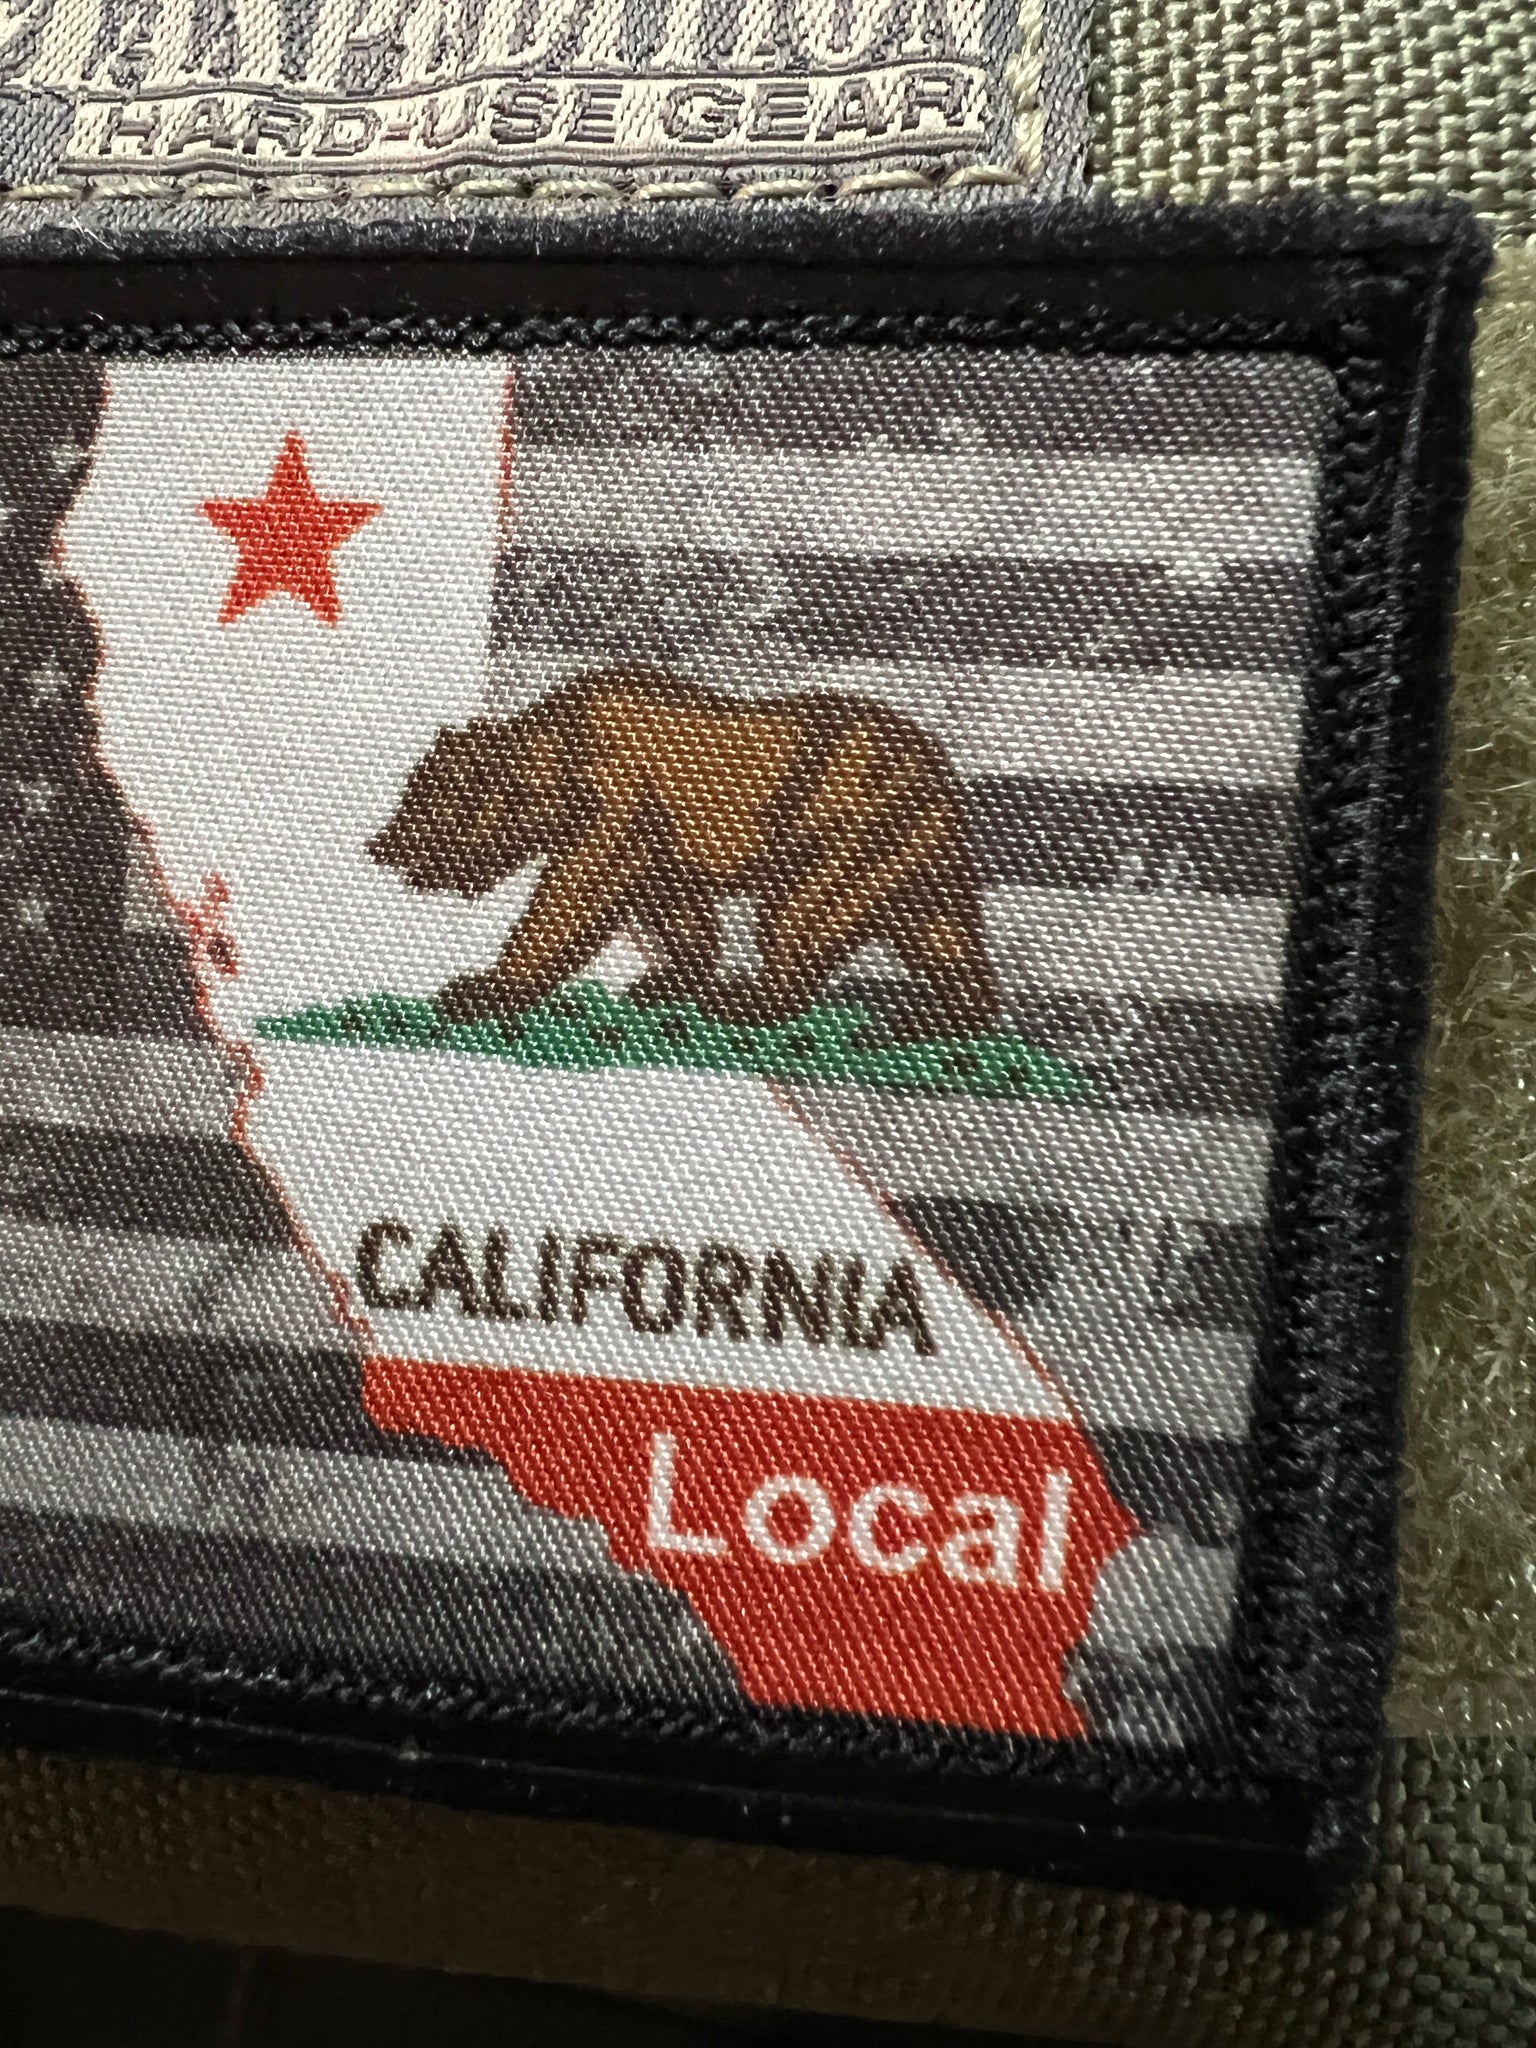 California Local USA Flag3